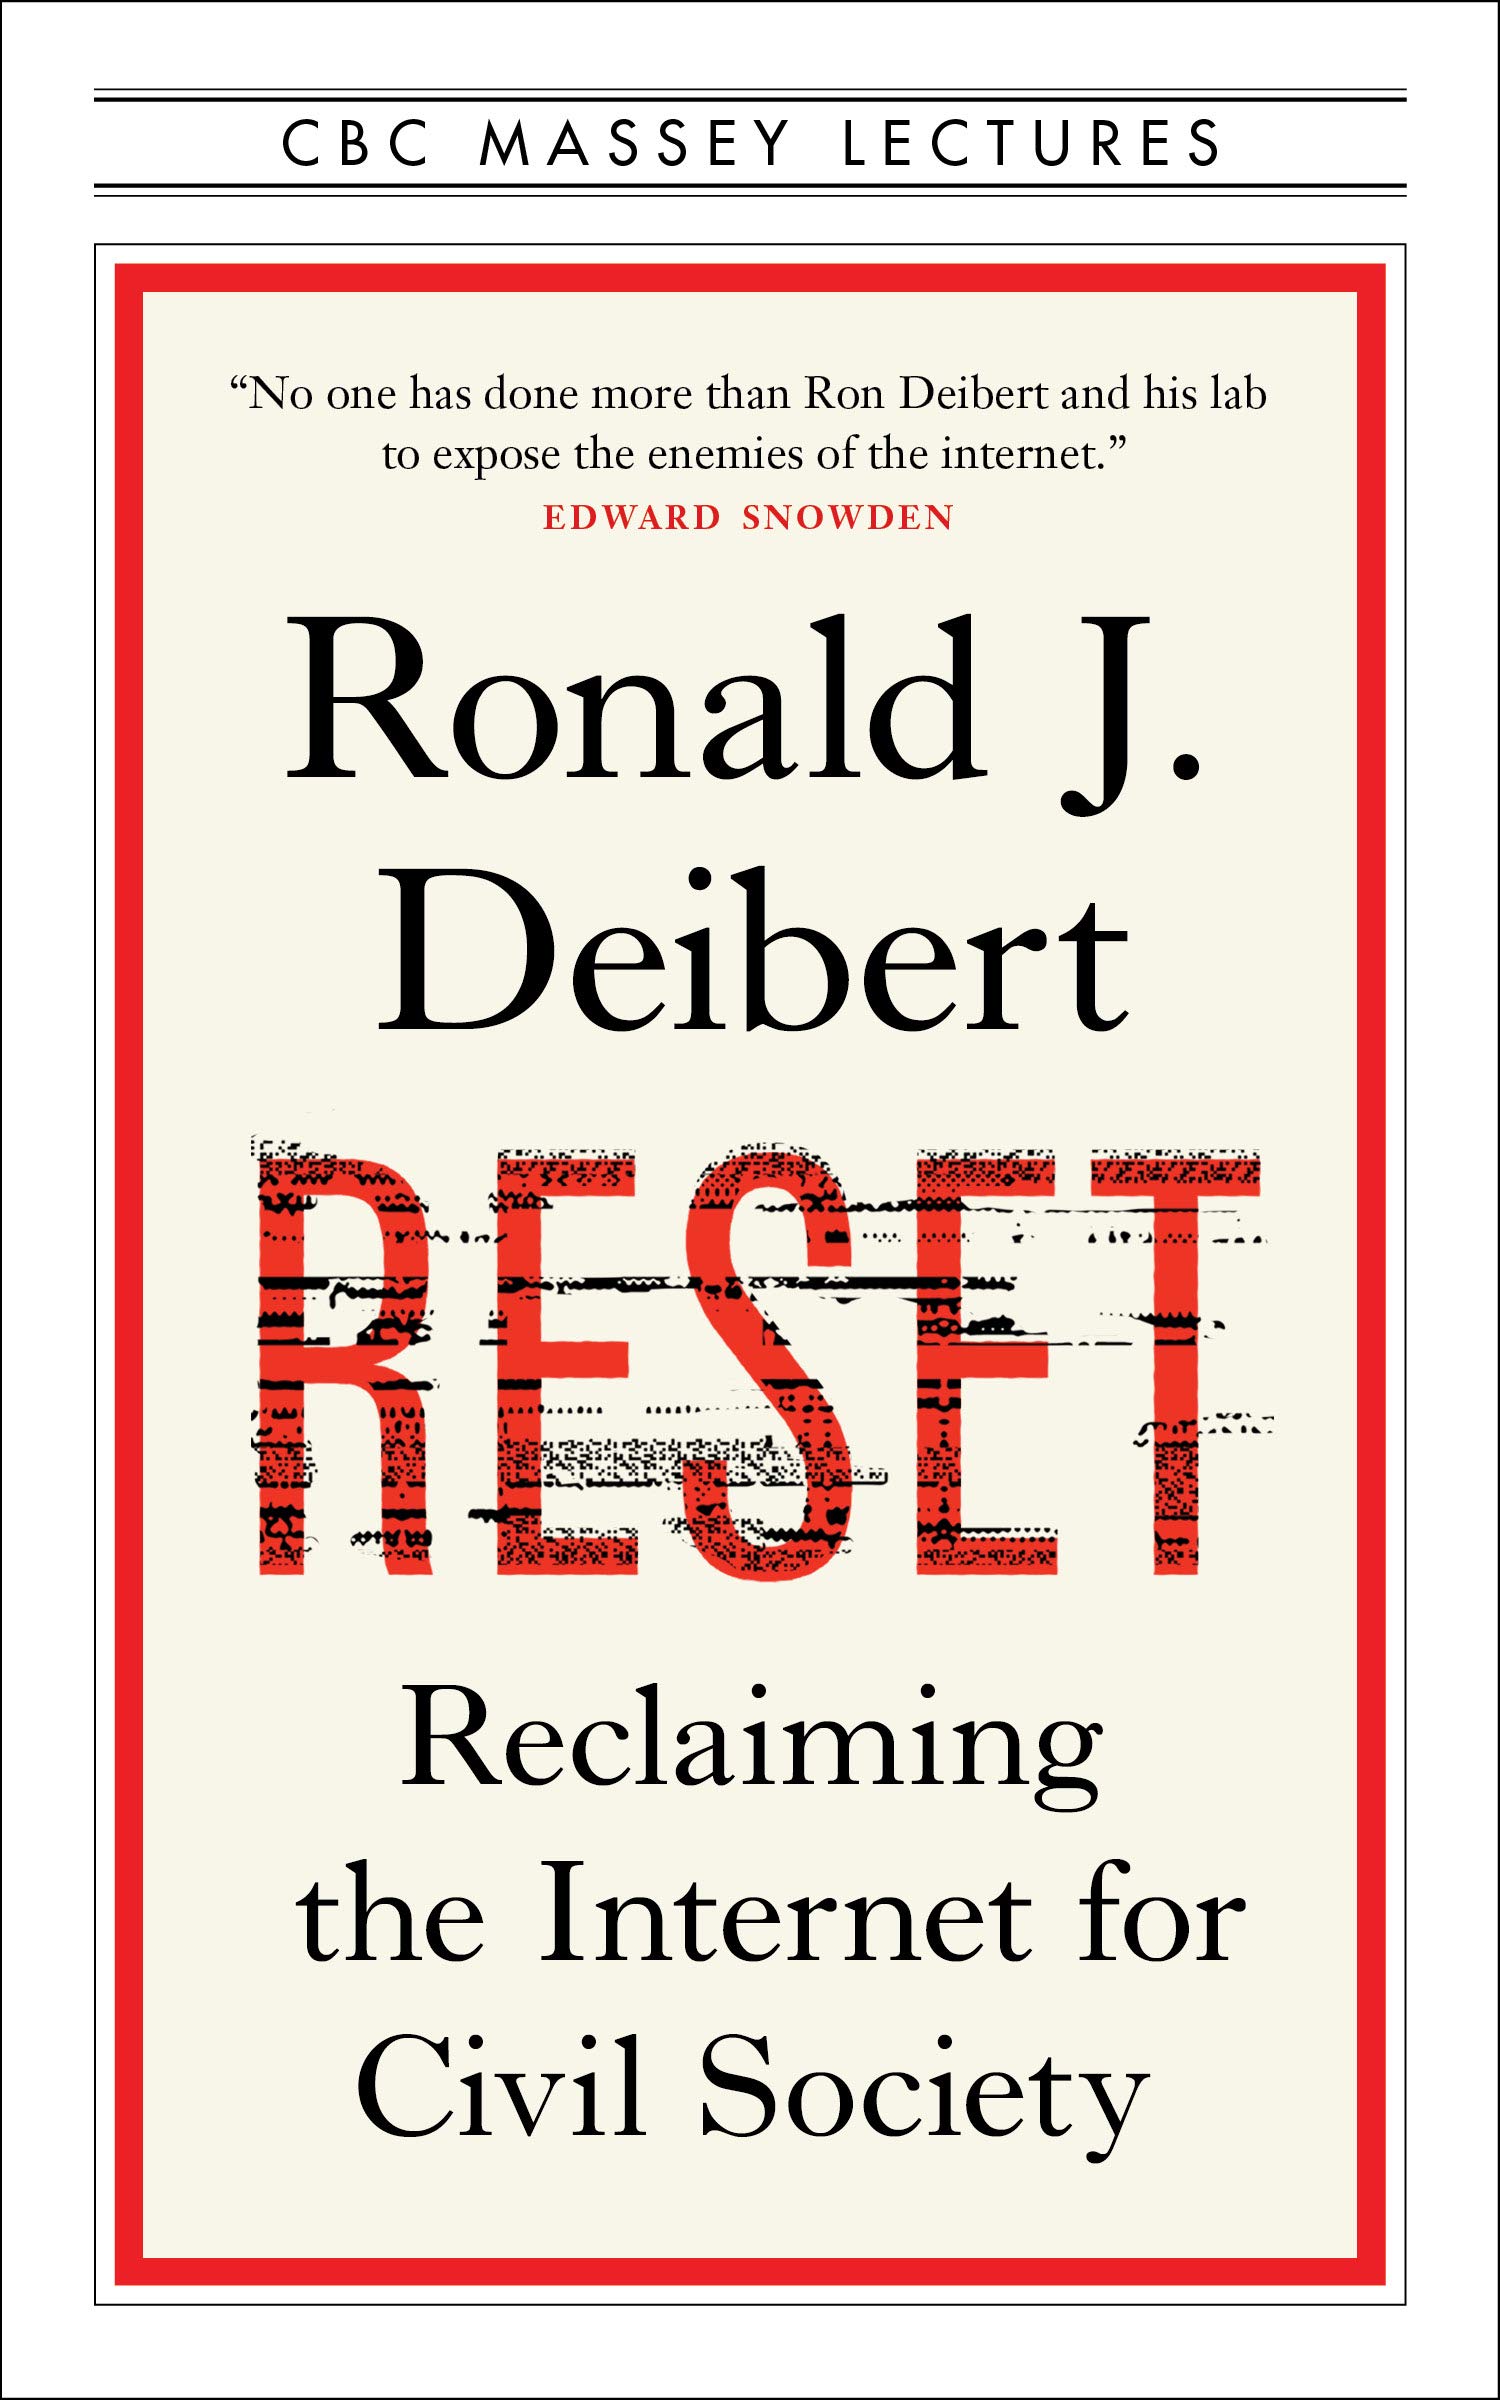 Deibert, Ronald - Reset Reclaiming the Internet for Civil Society